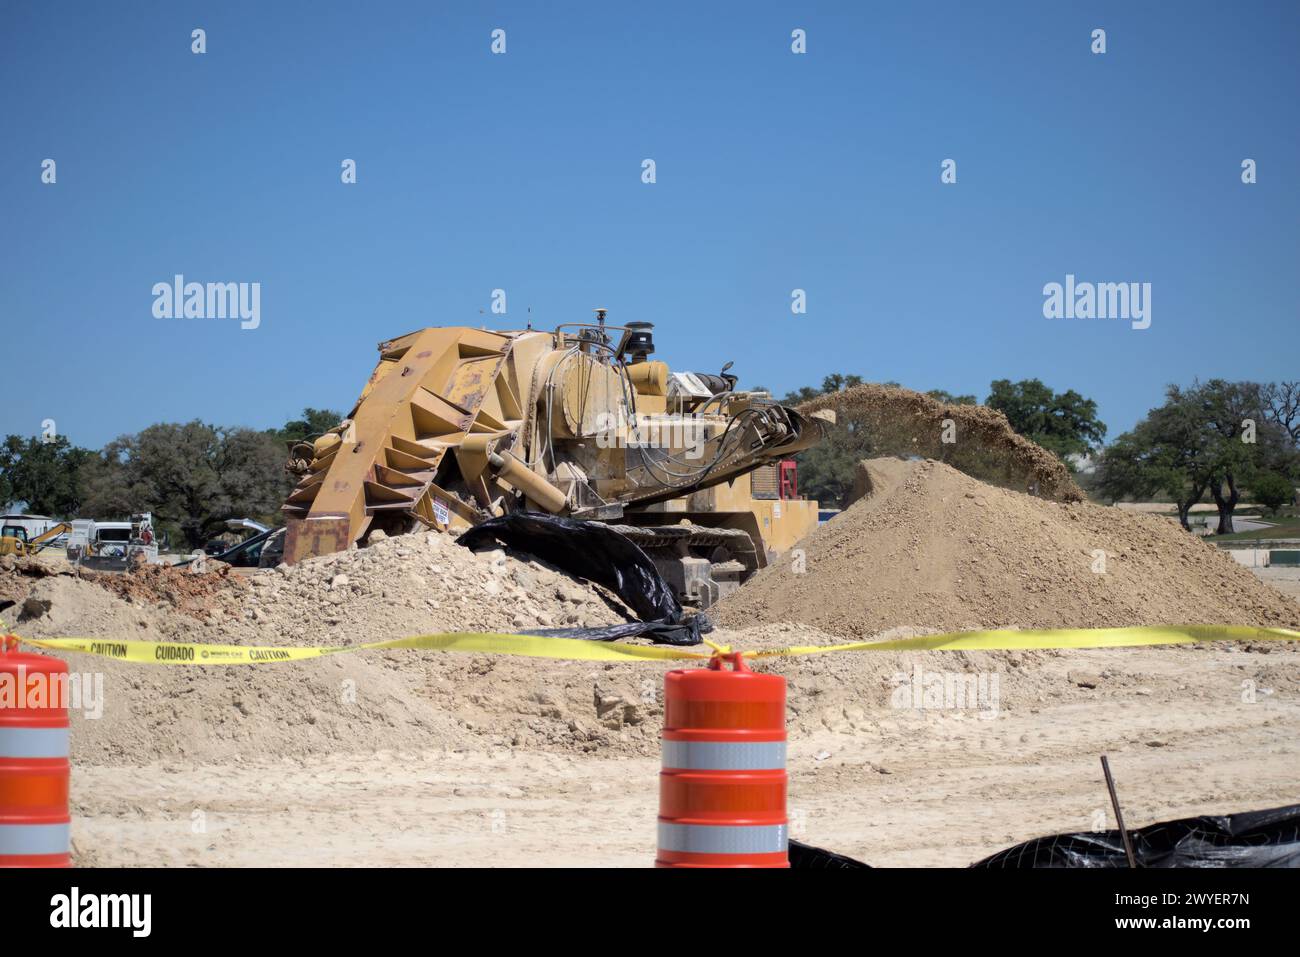 Équipement d'excavation nivelant les collines du Texas Hill Country pour soutenir l'étalement urbain, que beaucoup voient comme une transformation négative à la vie rurale/ranch. Banque D'Images